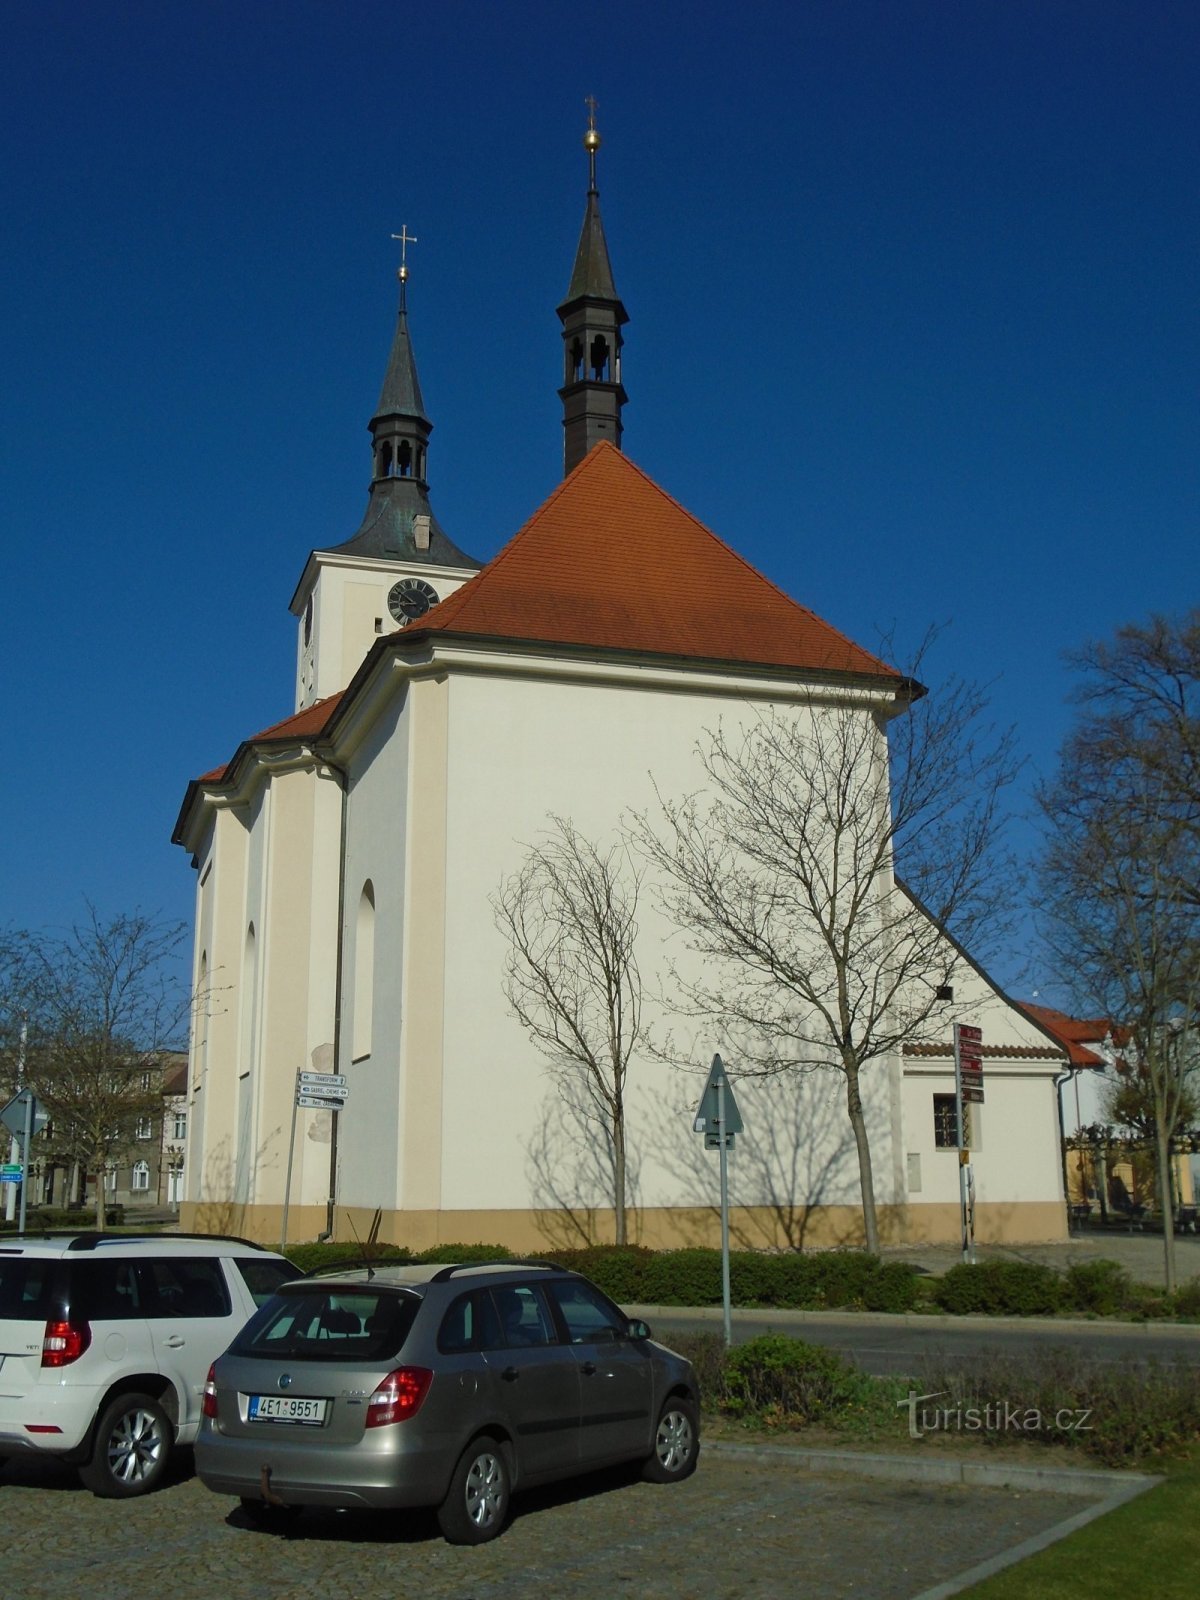 Nhà thờ St. Mary Magdalene (Lázně Bohdaneč, ngày 21.4.2019 tháng XNUMX năm XNUMX)